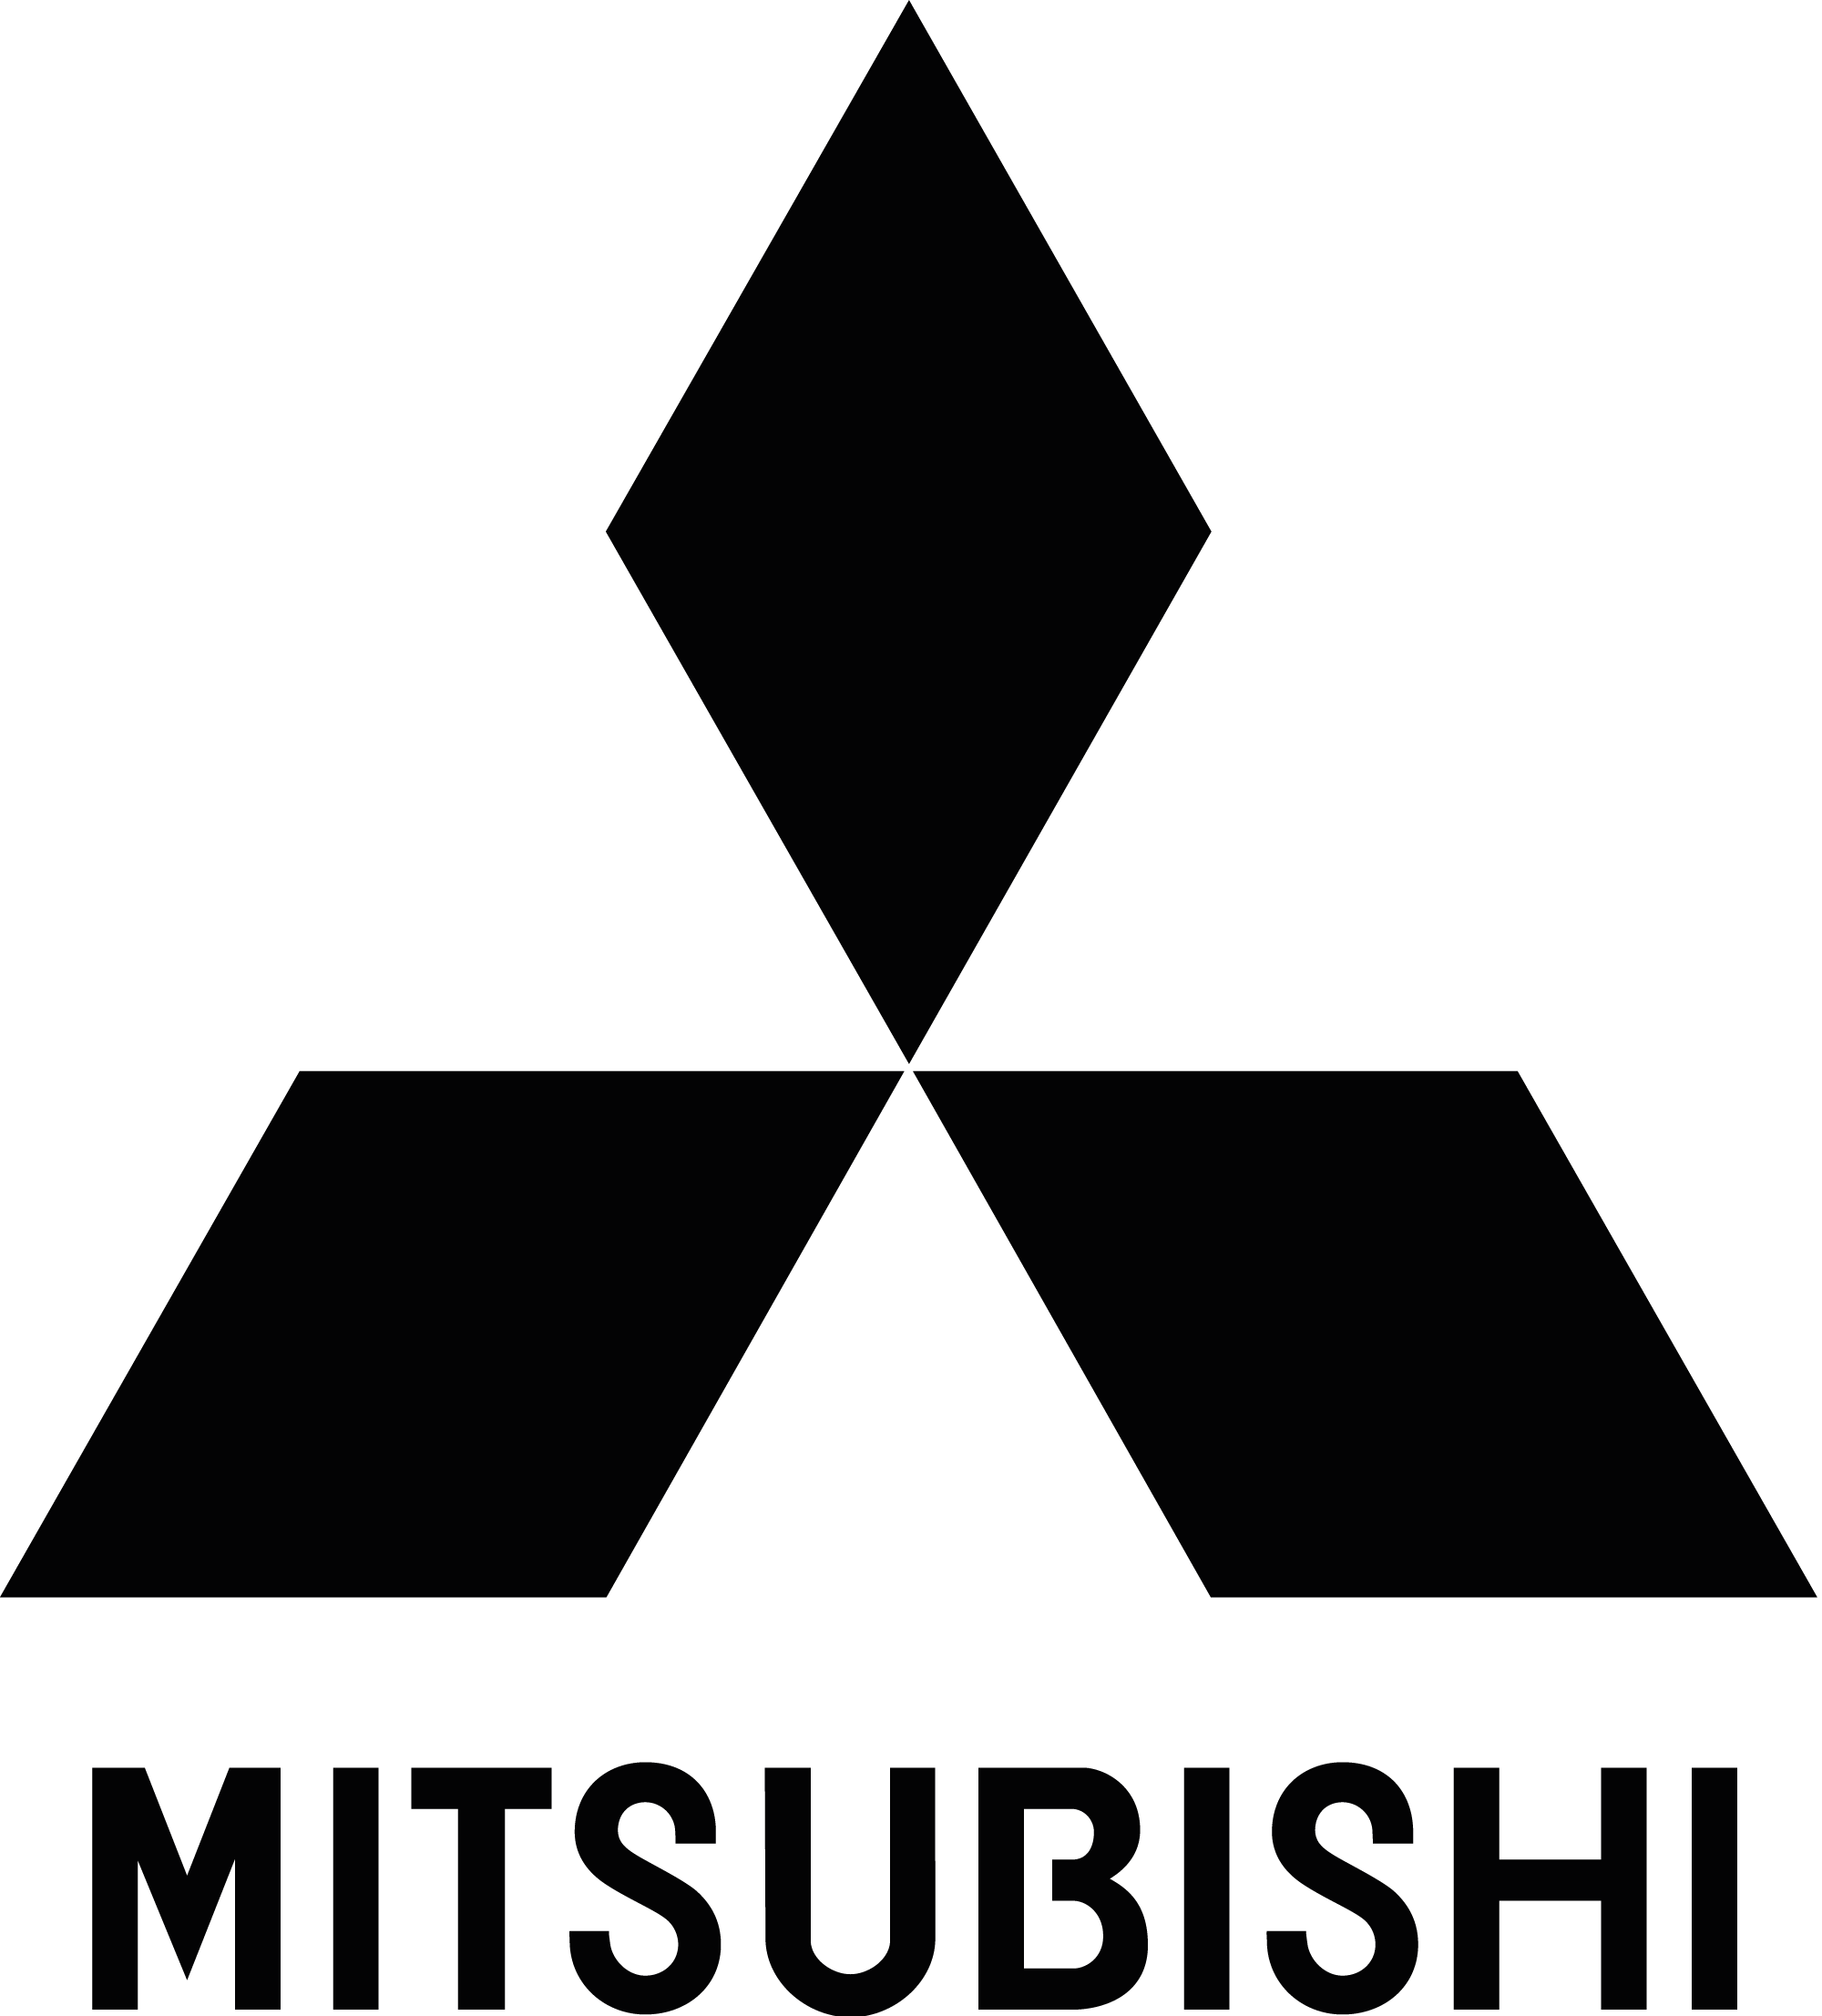 mitsubishi-logo-png-black